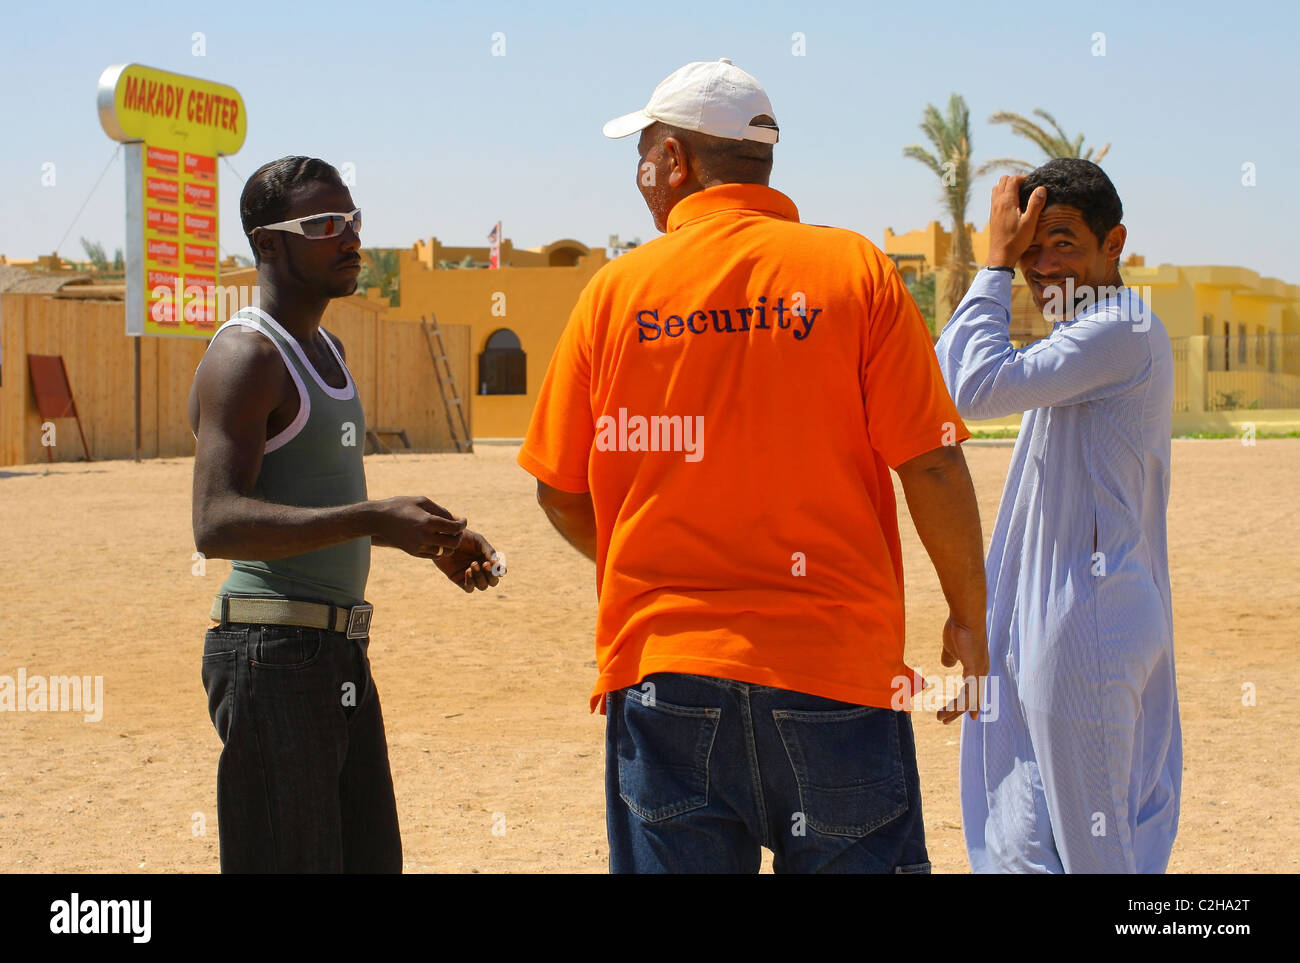 Drei Männer in der Nähe der Shop Makadi Center sprechen. Makadi Bay (30 km südlich von Hurghada Flughafen), Rotes Meer, Ägypten Stockfoto